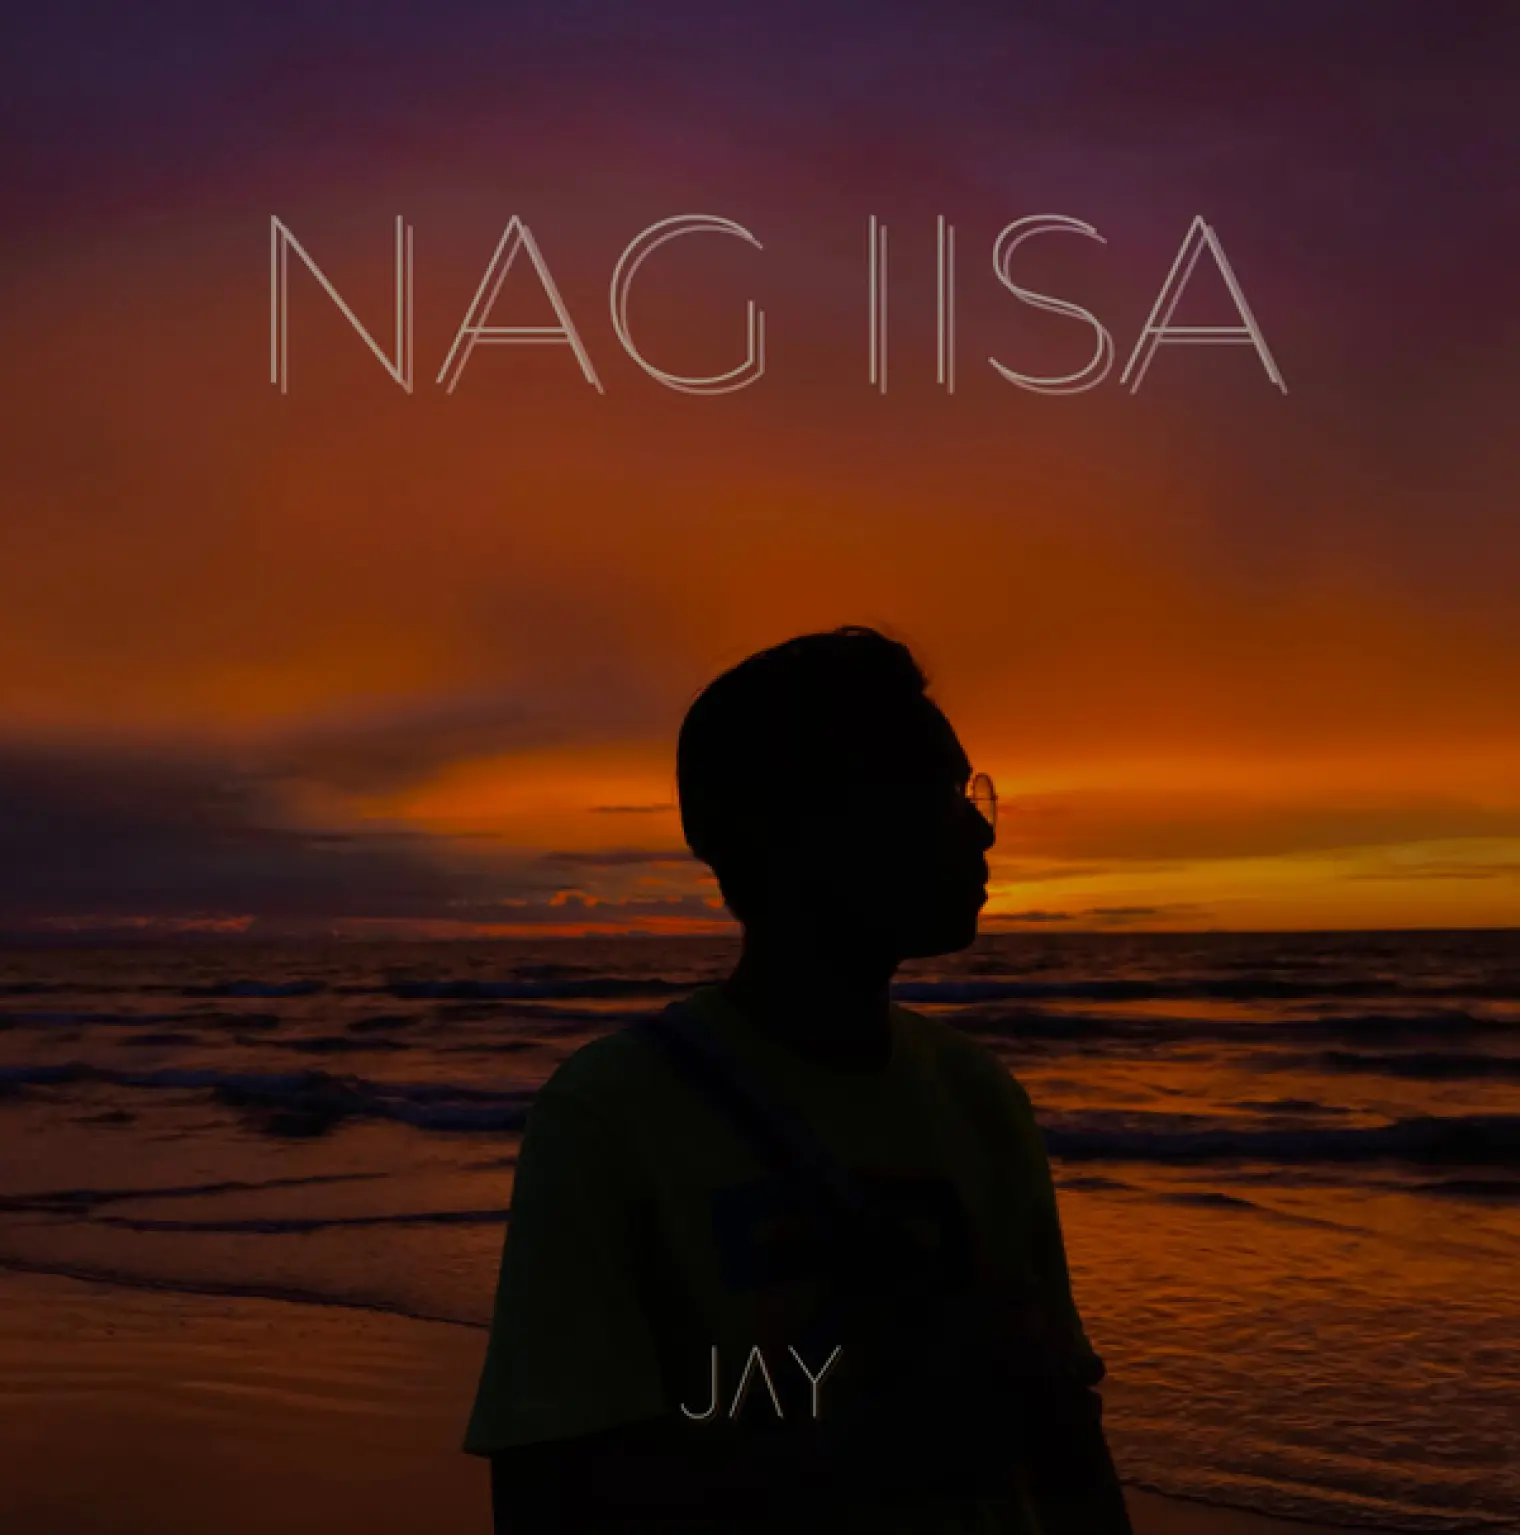 Nag-iisa -  Jay 